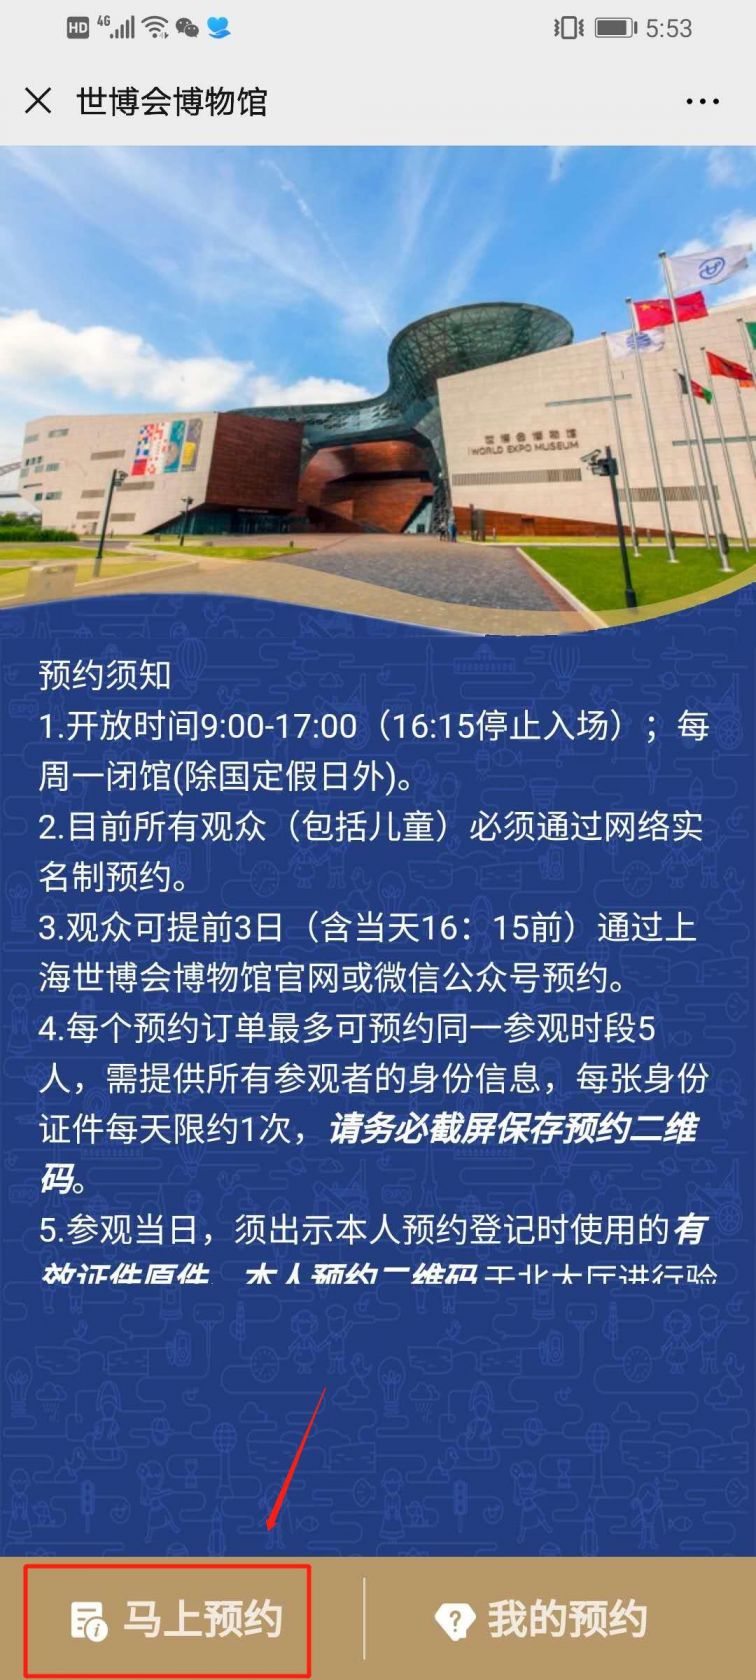 上海世博会博物馆预约流程(团队预约)